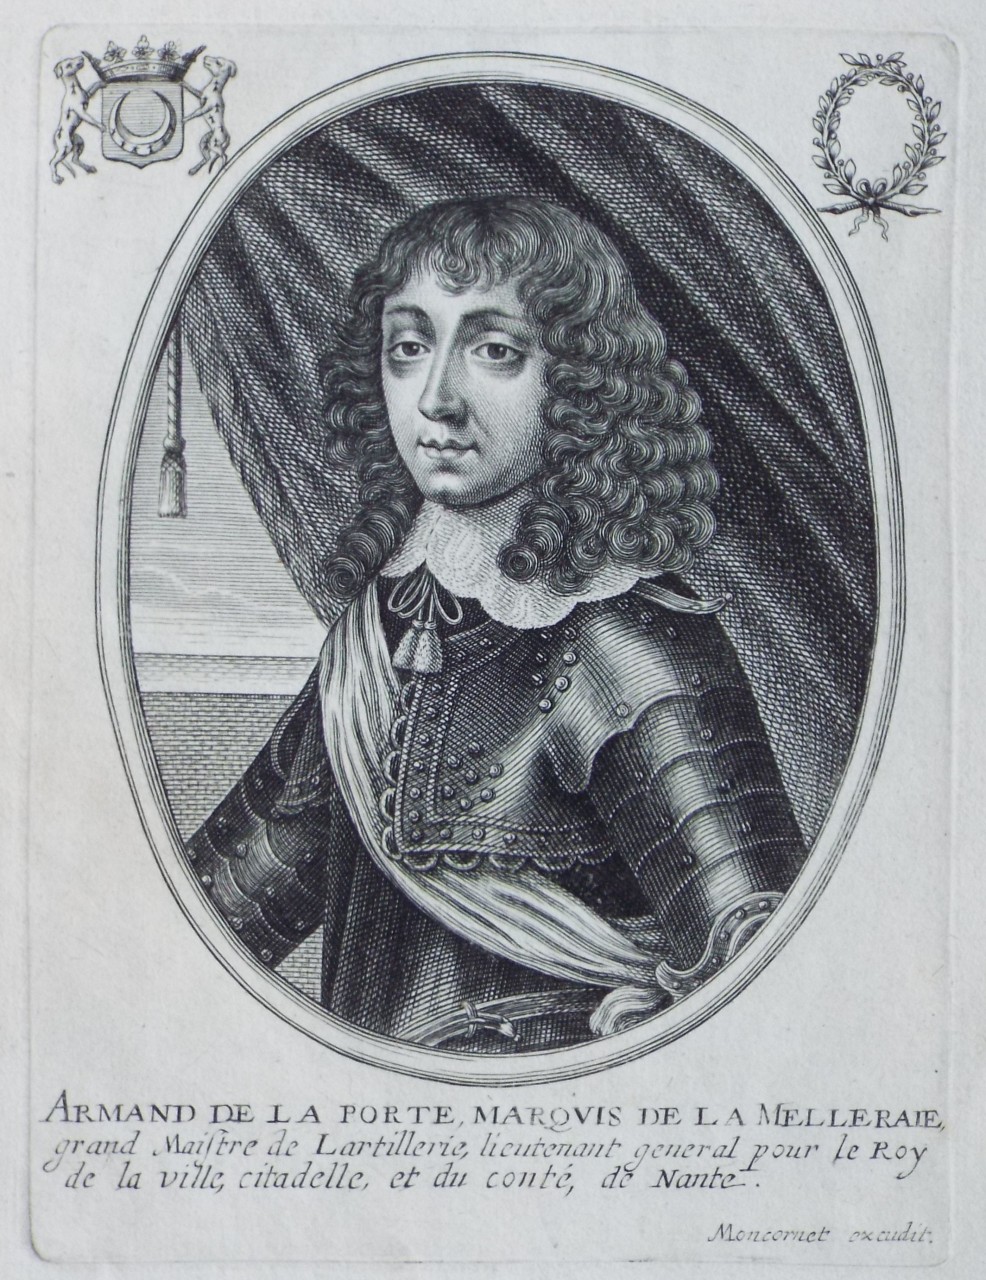 Print - Armand de la Porte, Marquis de la Melleraie, grand Maistre de Larillerie, lieutenant general pour le Roy de la ville, citadelle, etdu conte, de Nante.